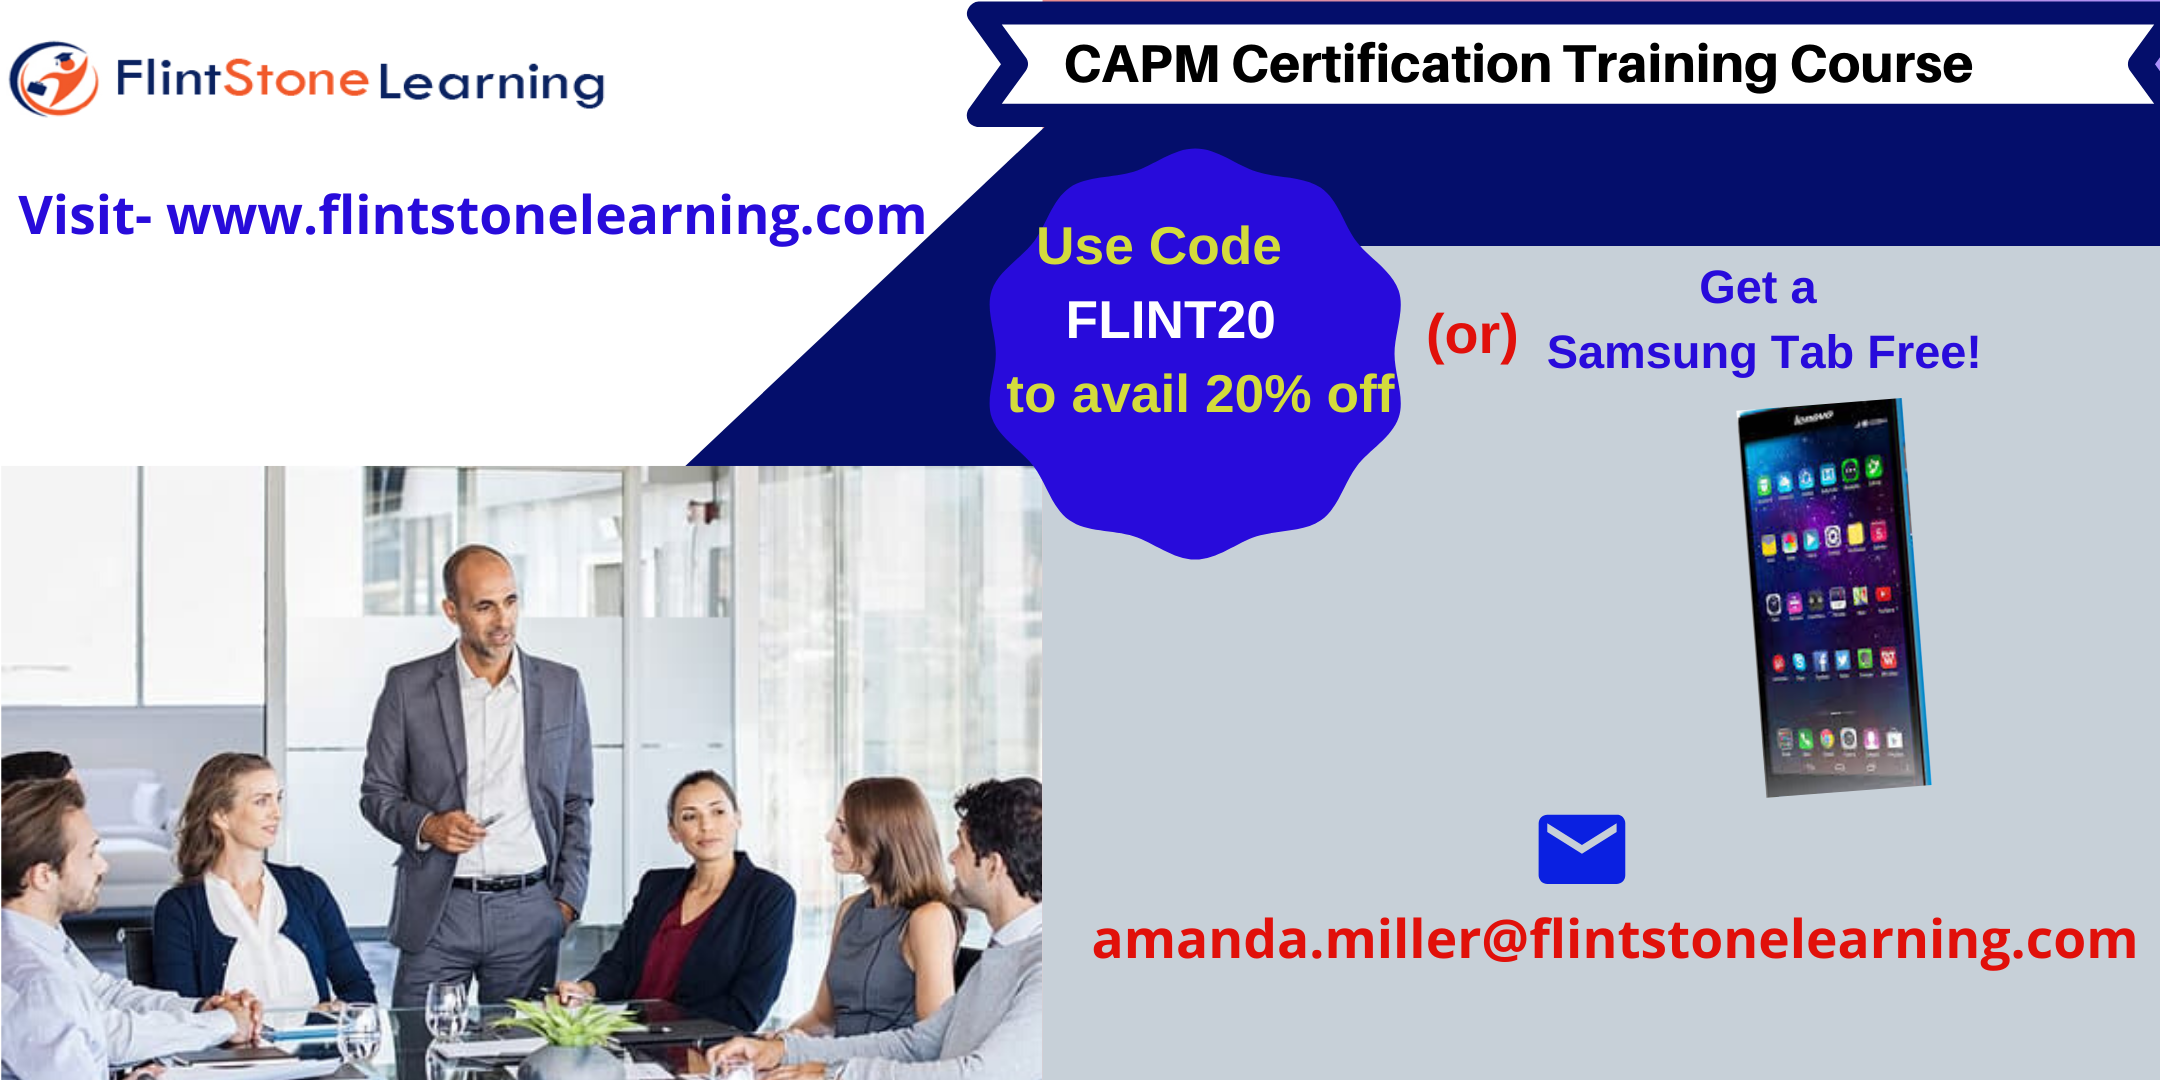 CAPM Certification Training Course in Arlington, MA